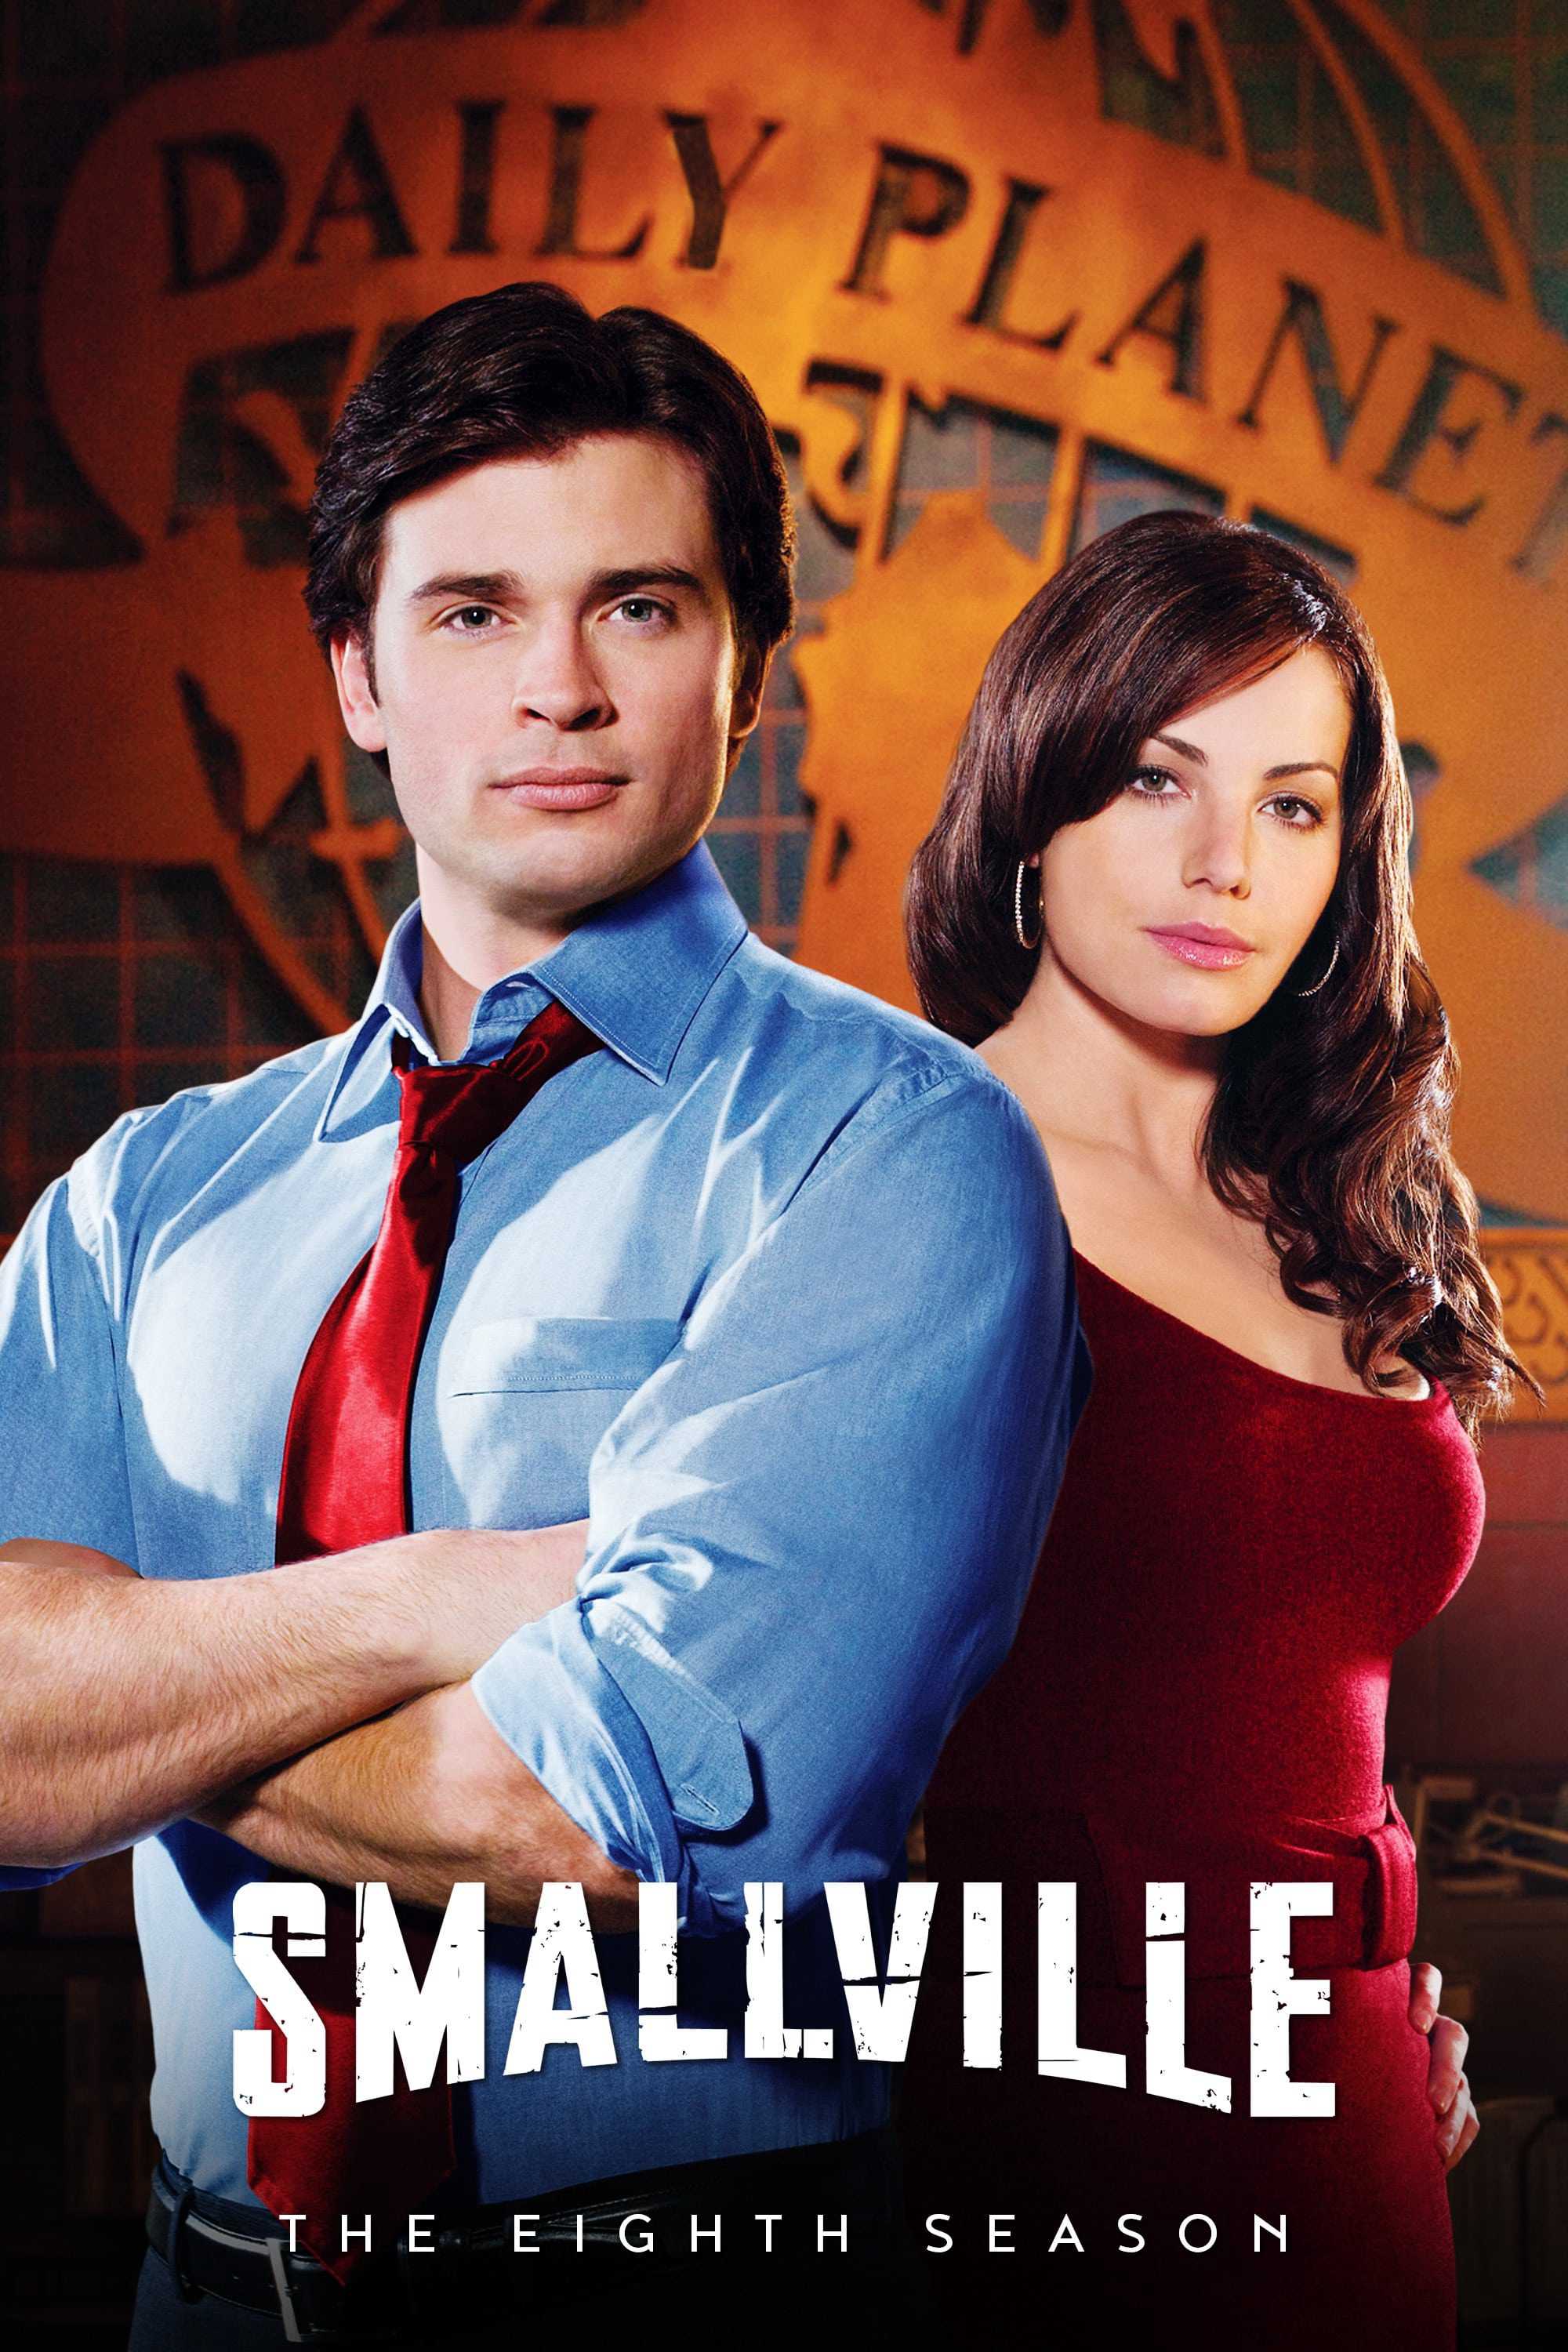 Thị trấn smallville (phần 8) - Smallville (season 8)